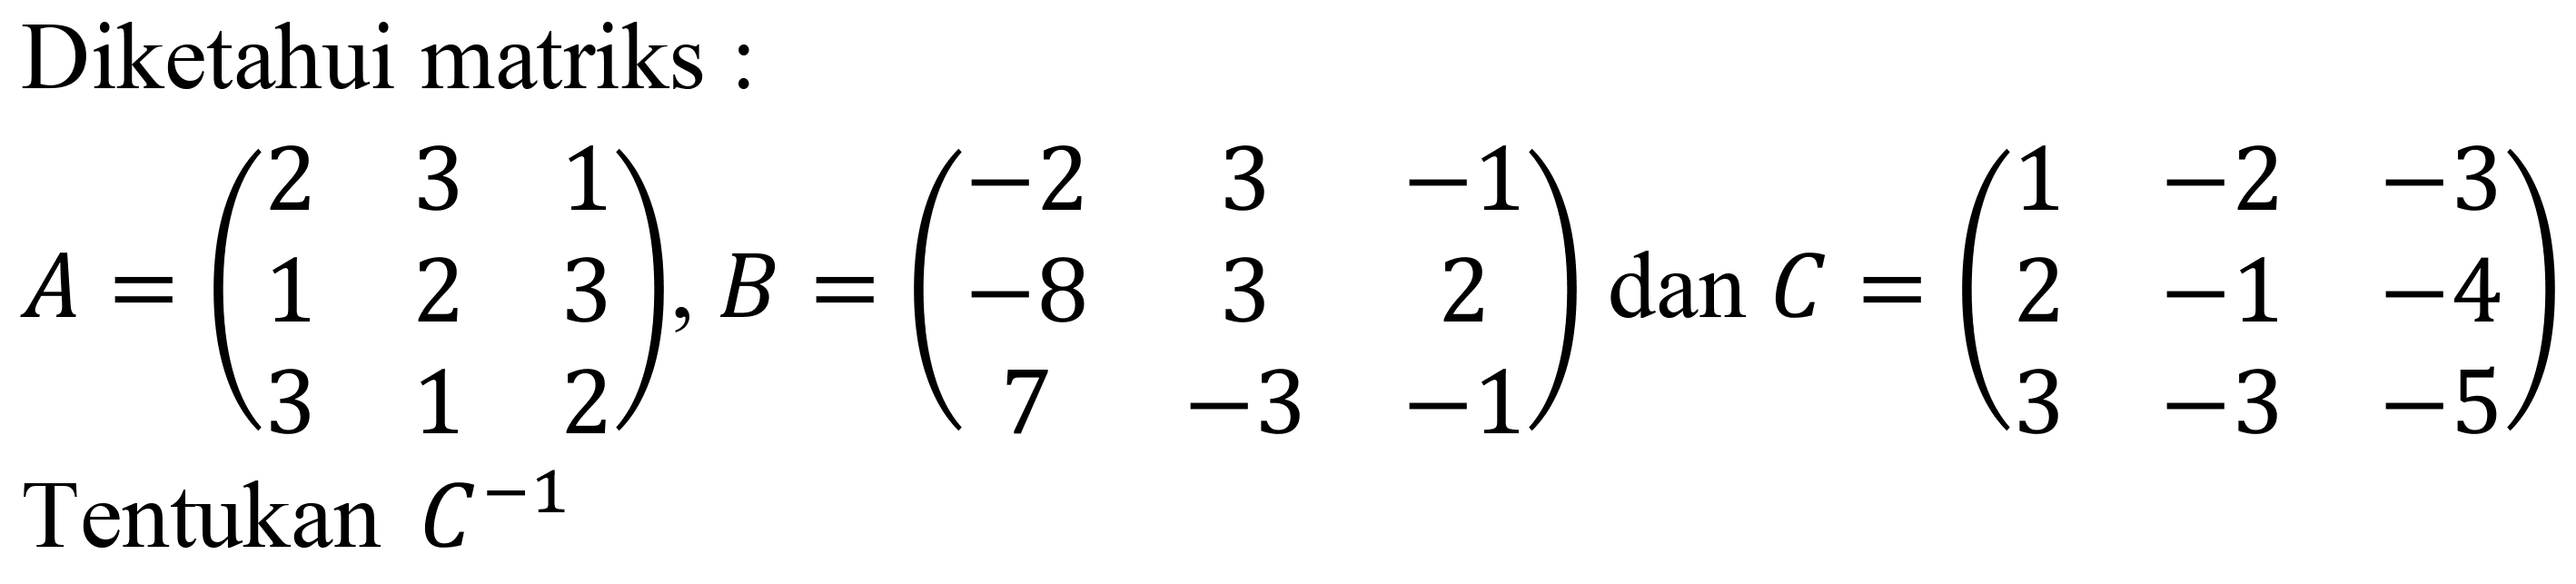 Diketahui matriks :

A=(
2  3  1 
1  2  3 
3  1  2
), B=(
-2  3  -1 
-8  3  2 
7  -3  -1
) dan C=(
1  -2  -3 
2  -1  -4 
3  -3  -5
)
